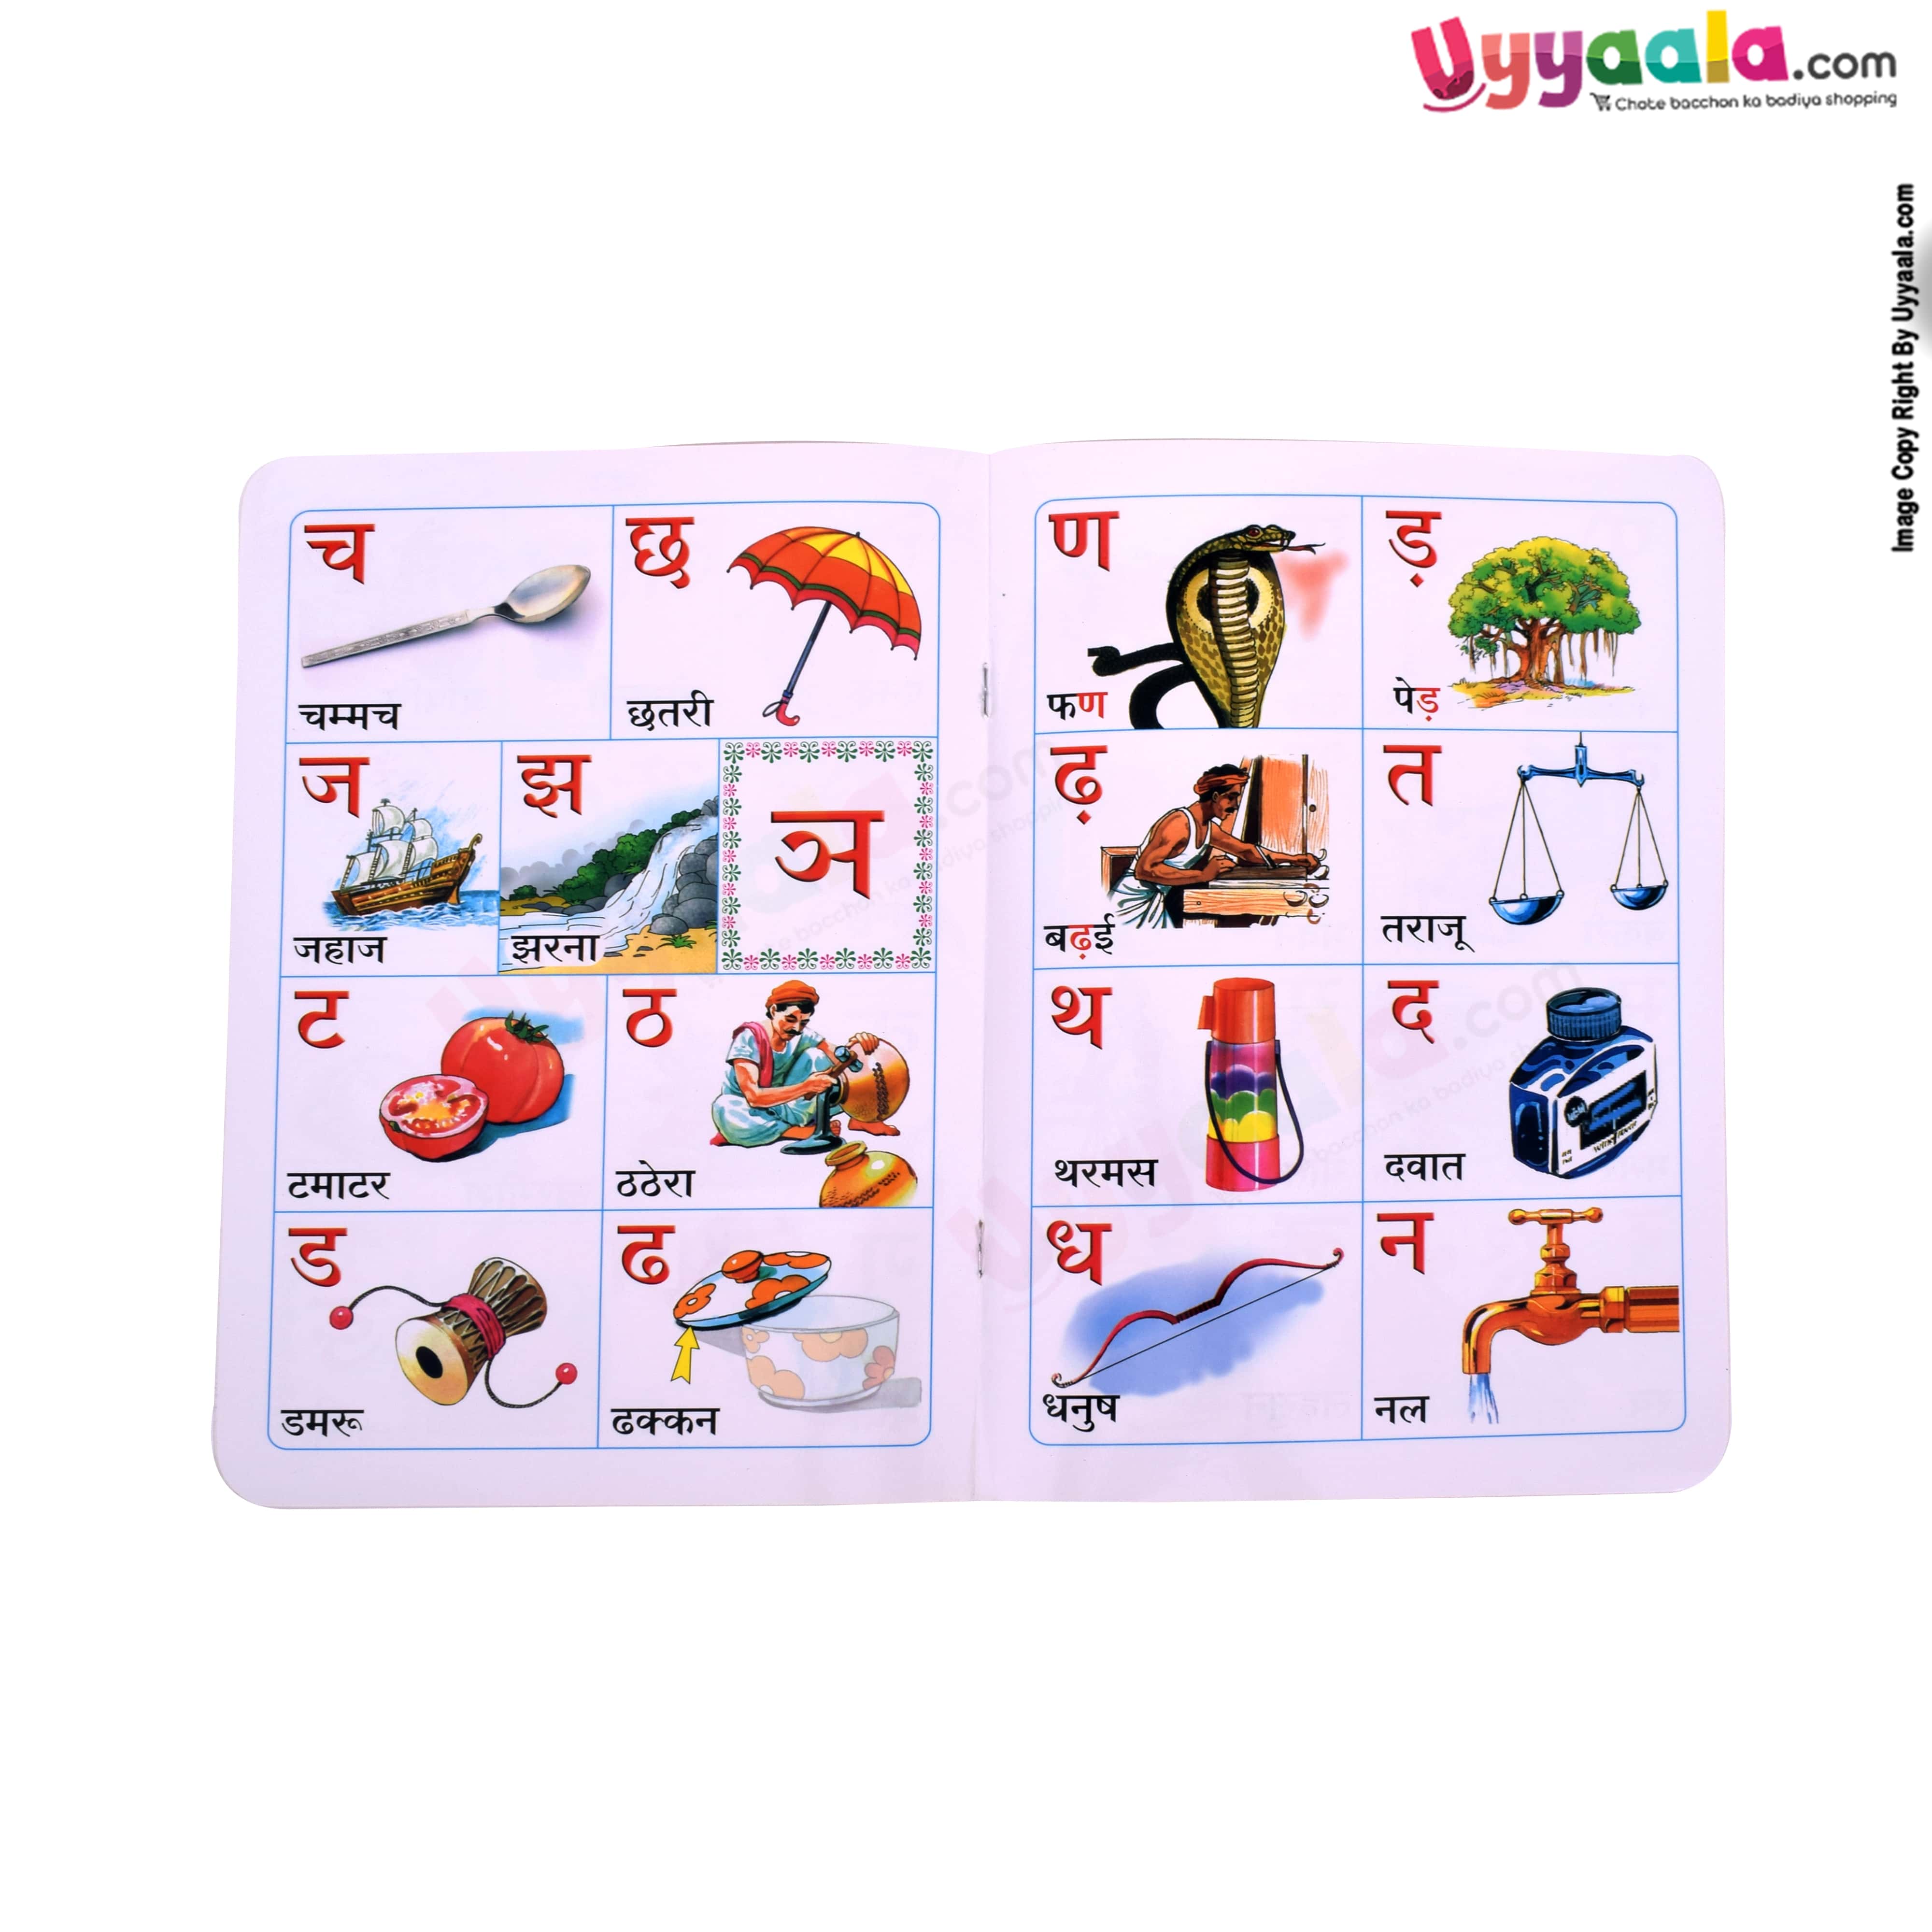 Vikas Telugu & Hindi alphabets books for children's